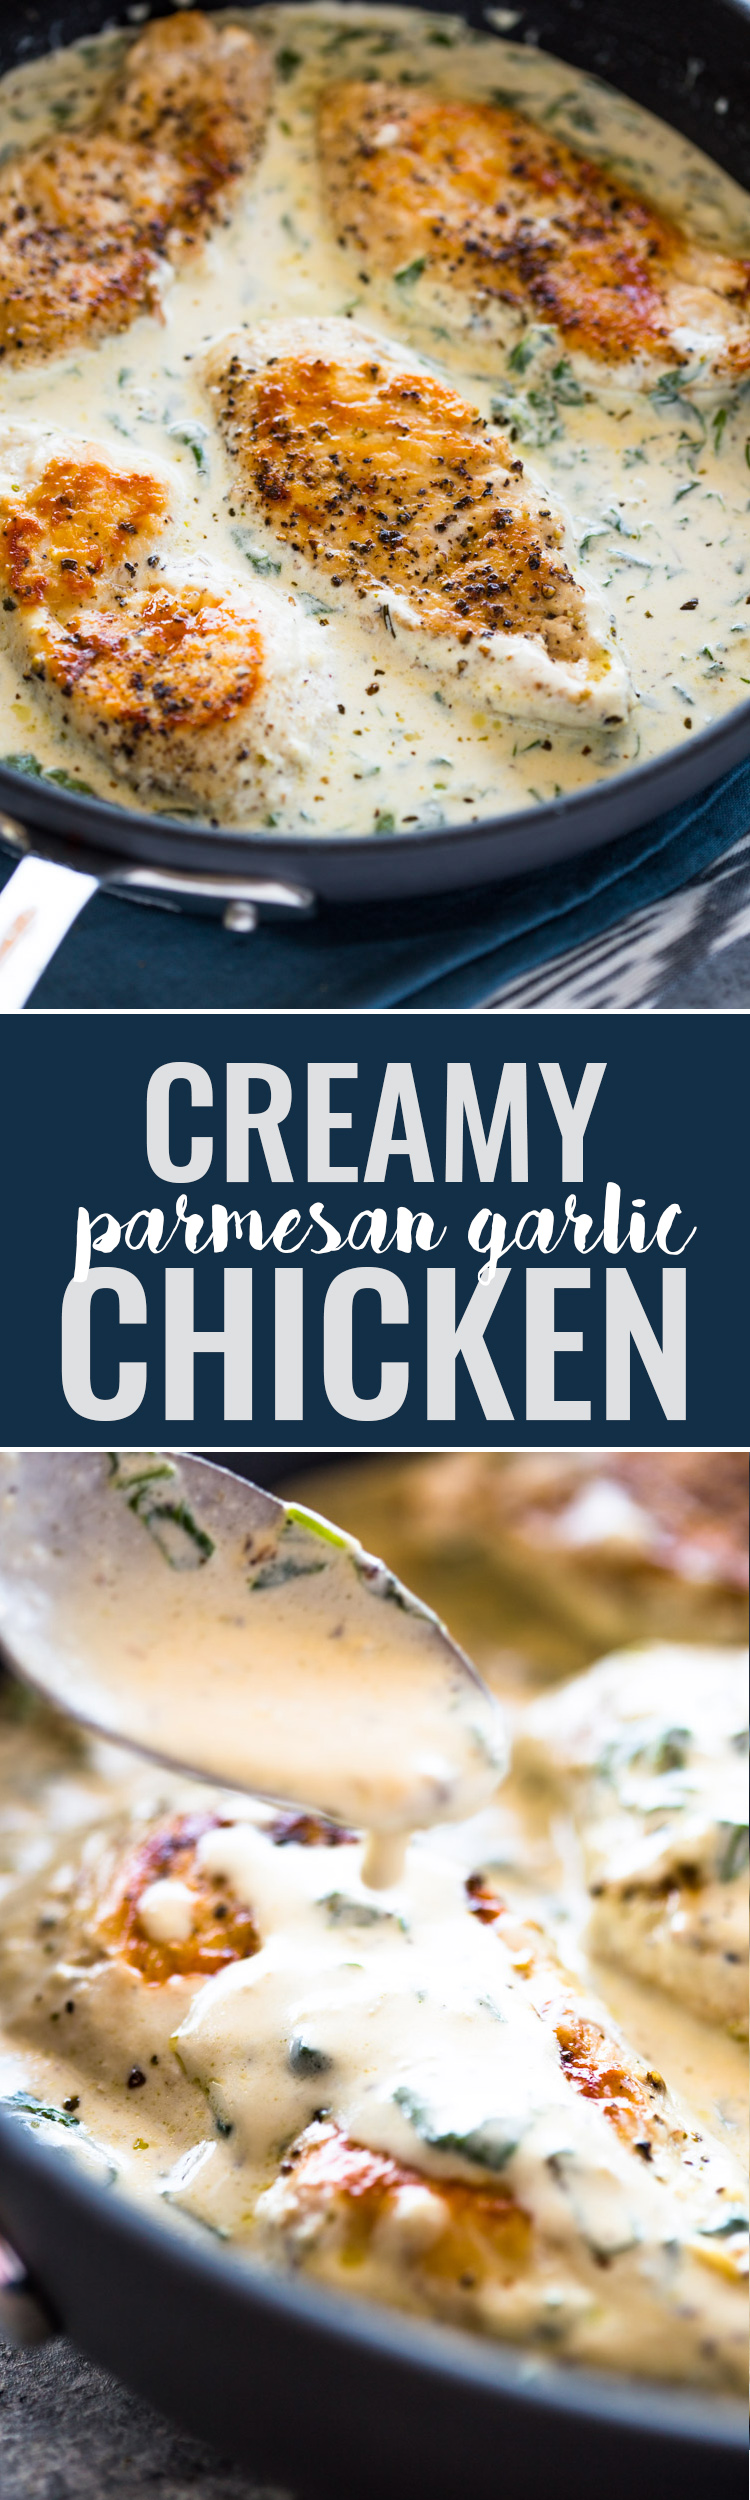 Creamy Parmesan Garlic Chicken